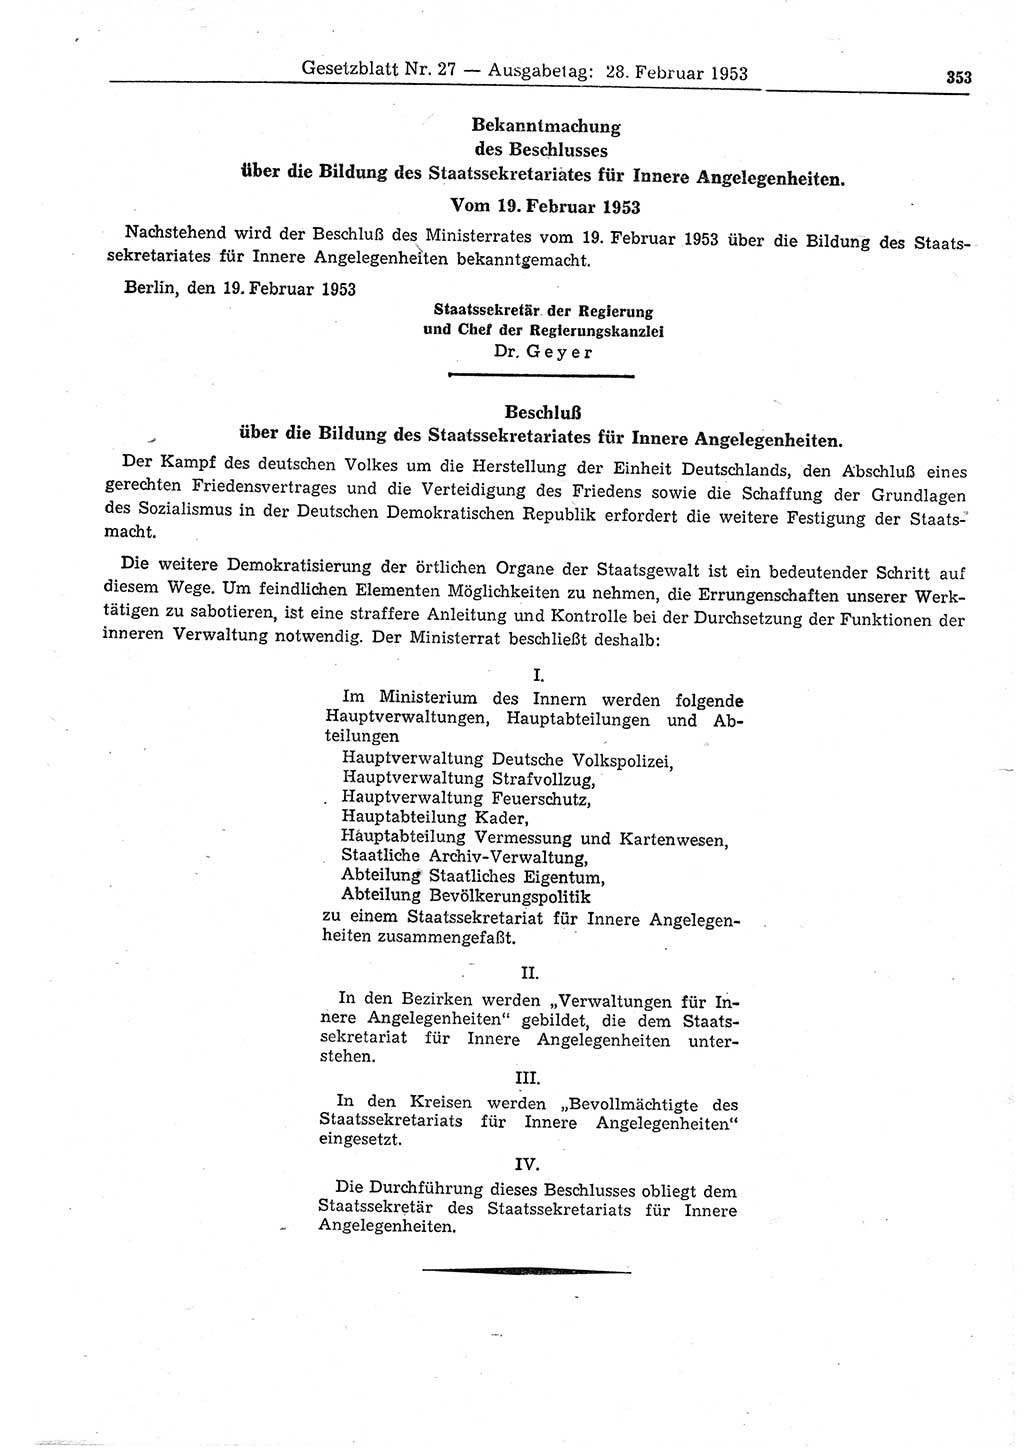 Gesetzblatt (GBl.) der Deutschen Demokratischen Republik (DDR) 1953, Seite 353 (GBl. DDR 1953, S. 353)